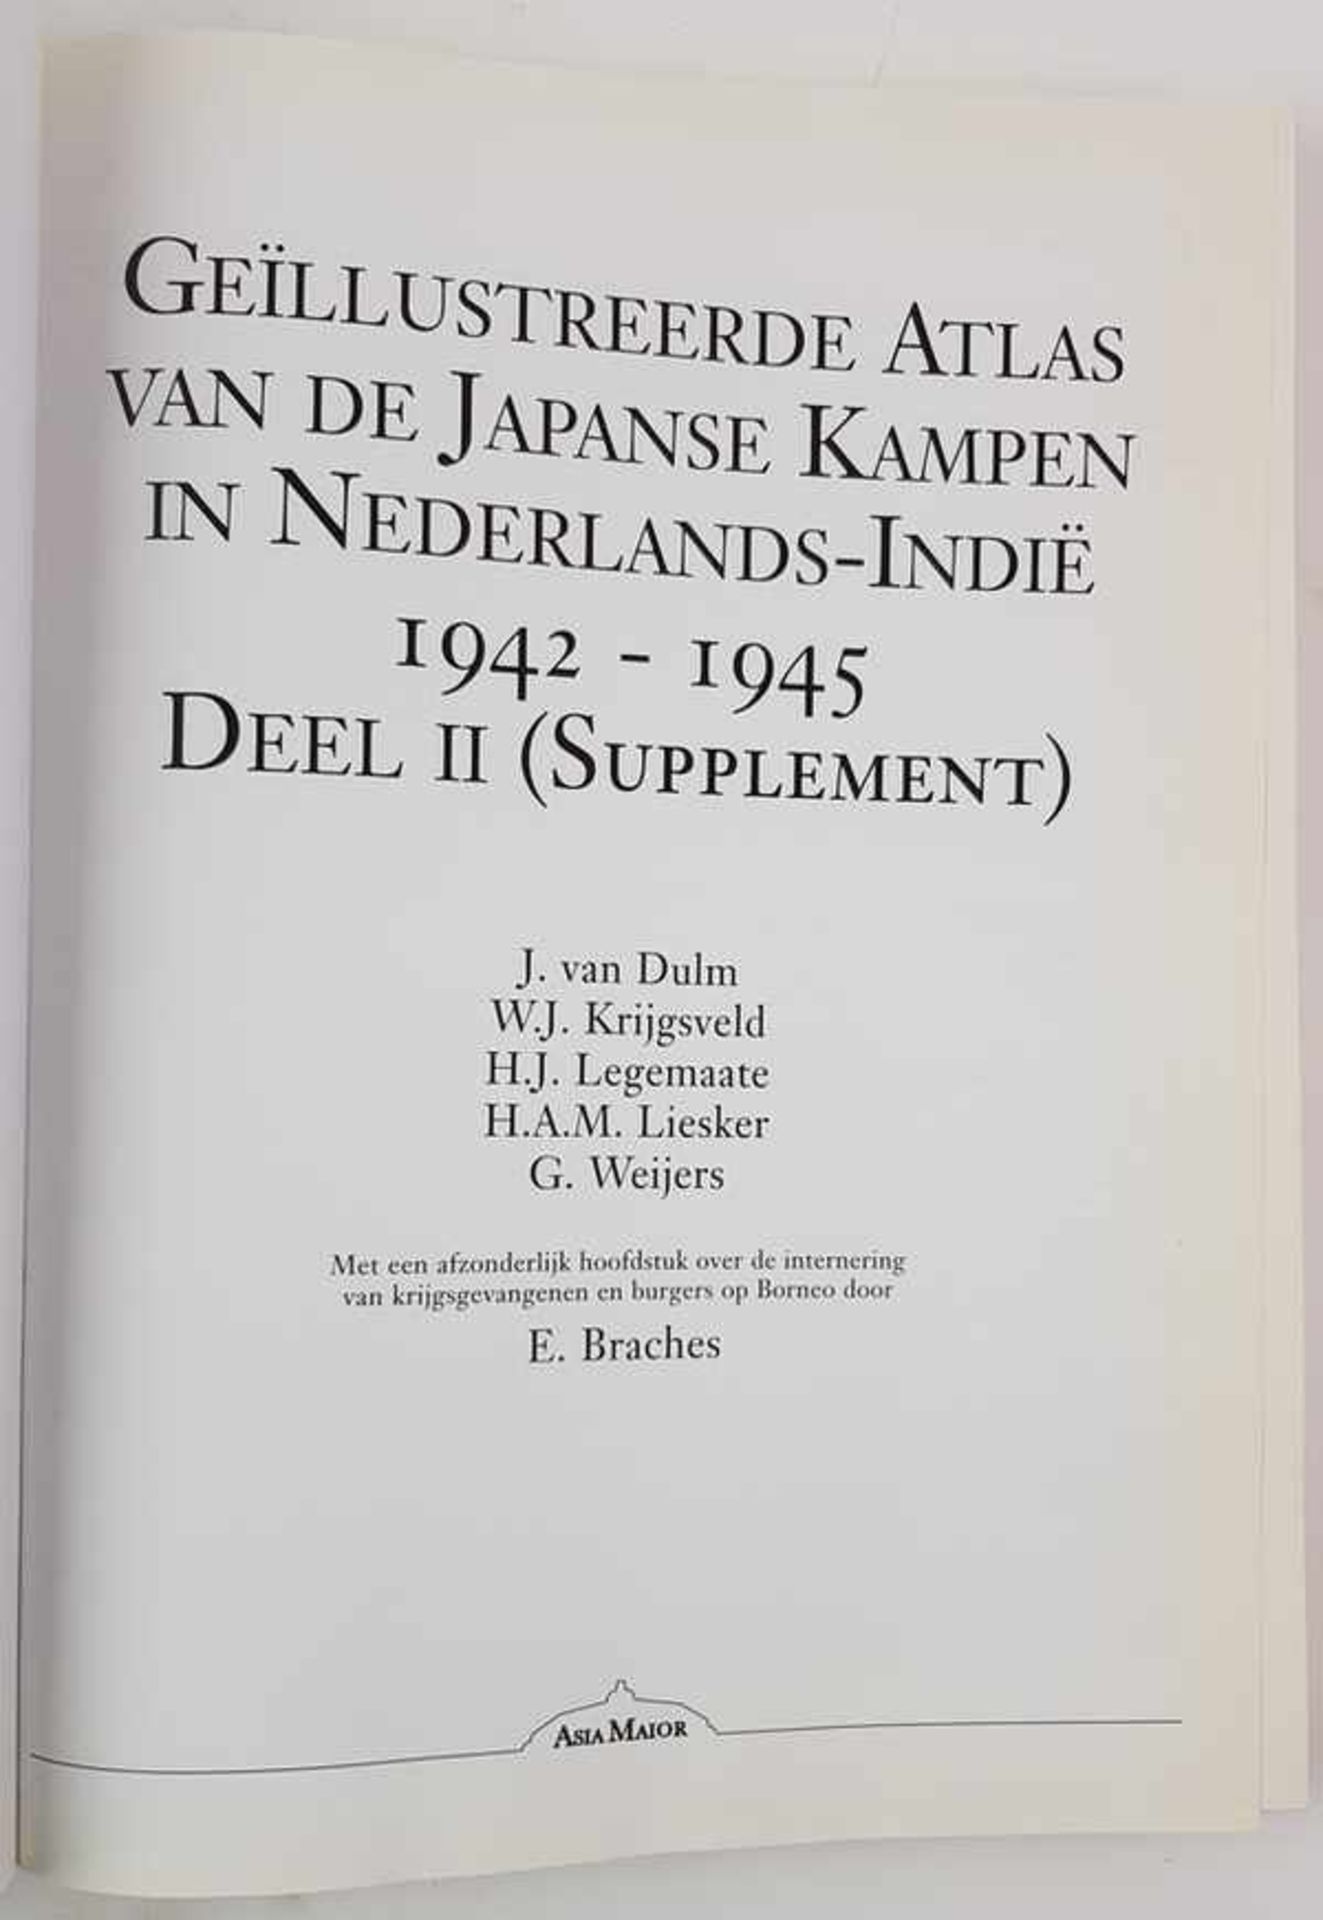 (Boeken) (Geschiedenis) Geillustreerde Atlas van de Japanse Kampen in Nederlands-Indie 1942-1945J. - Bild 11 aus 11